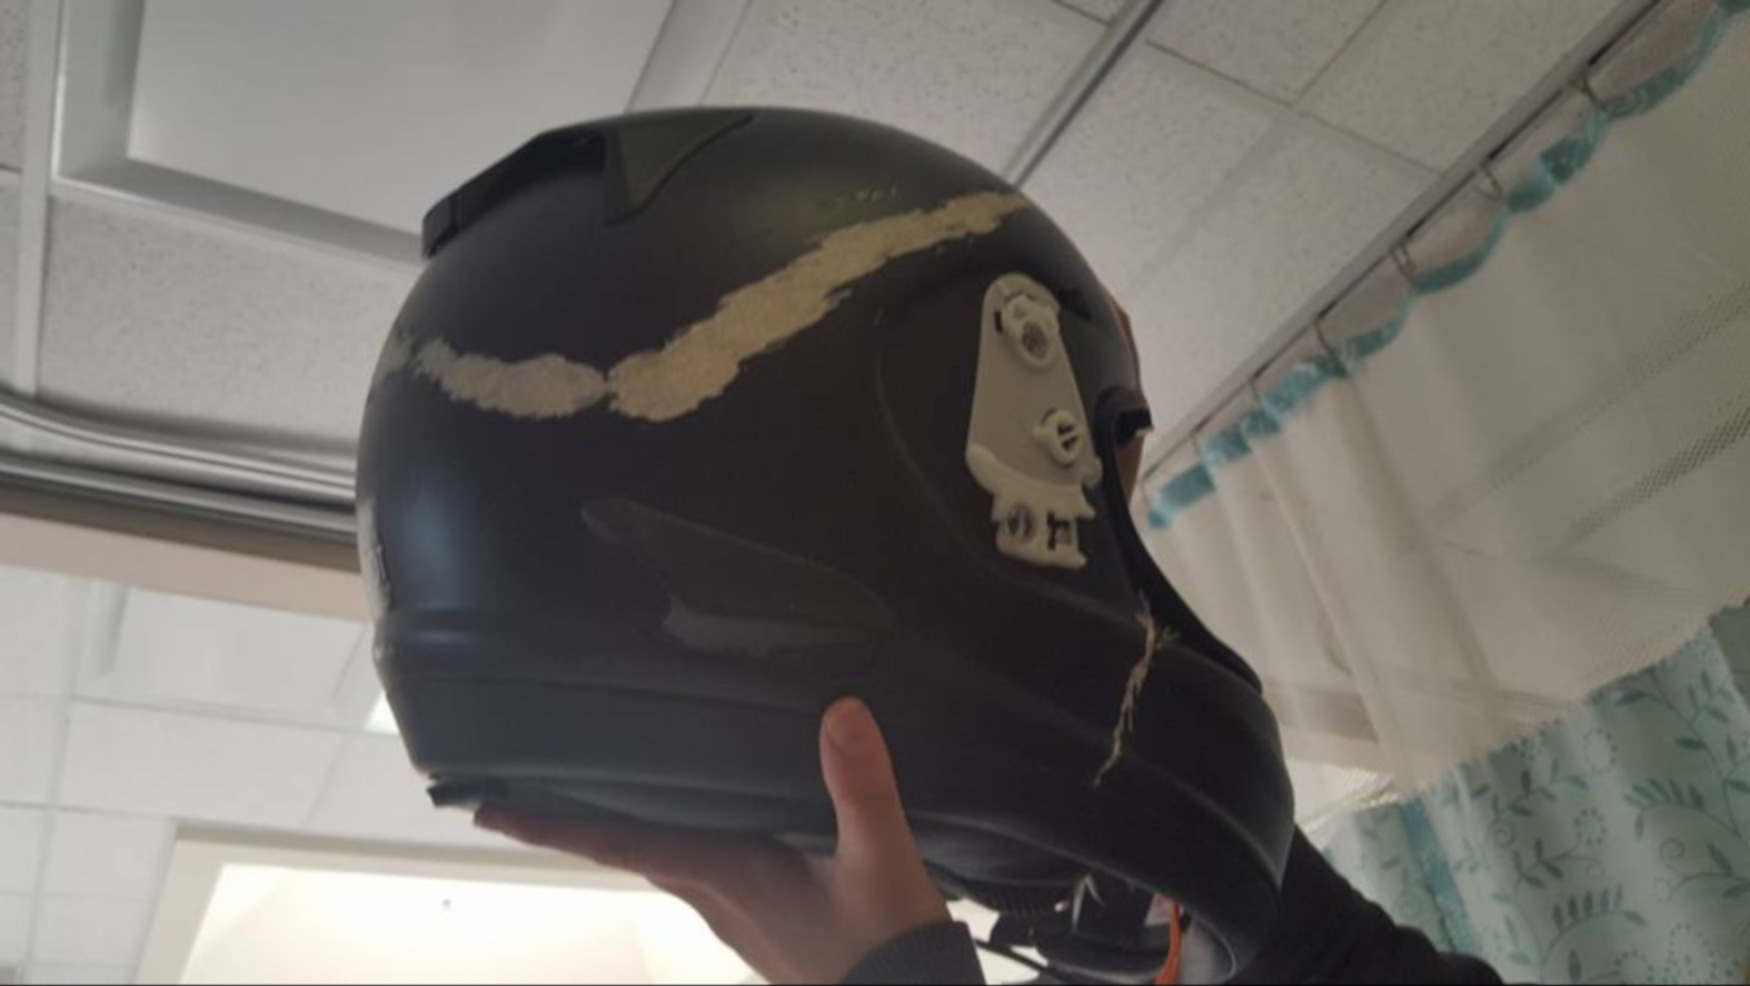 Damaged motorcycle helmet